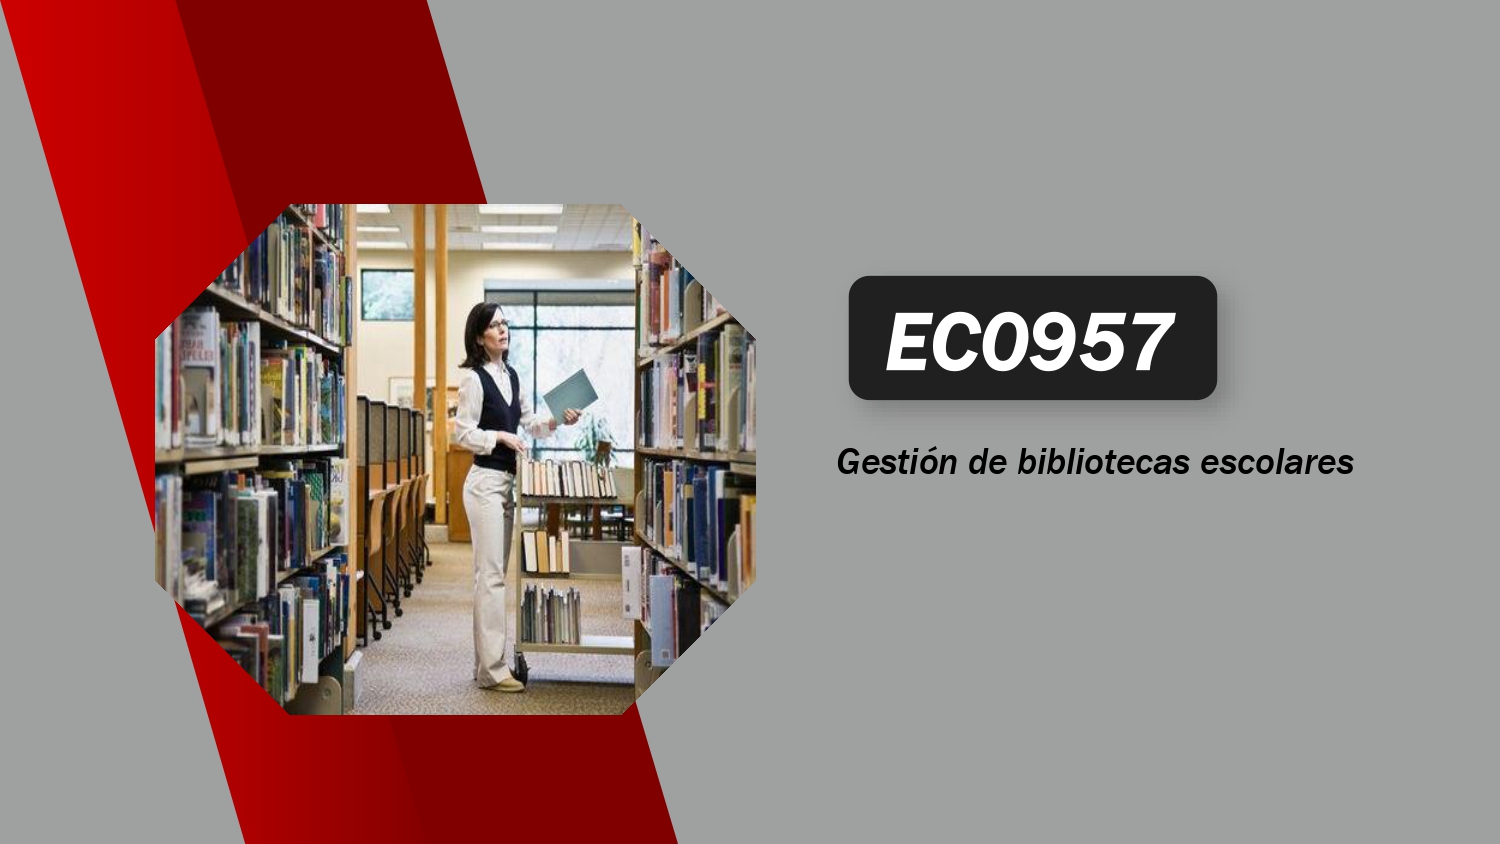 EC0957 Gestión de bibliotecas escolares